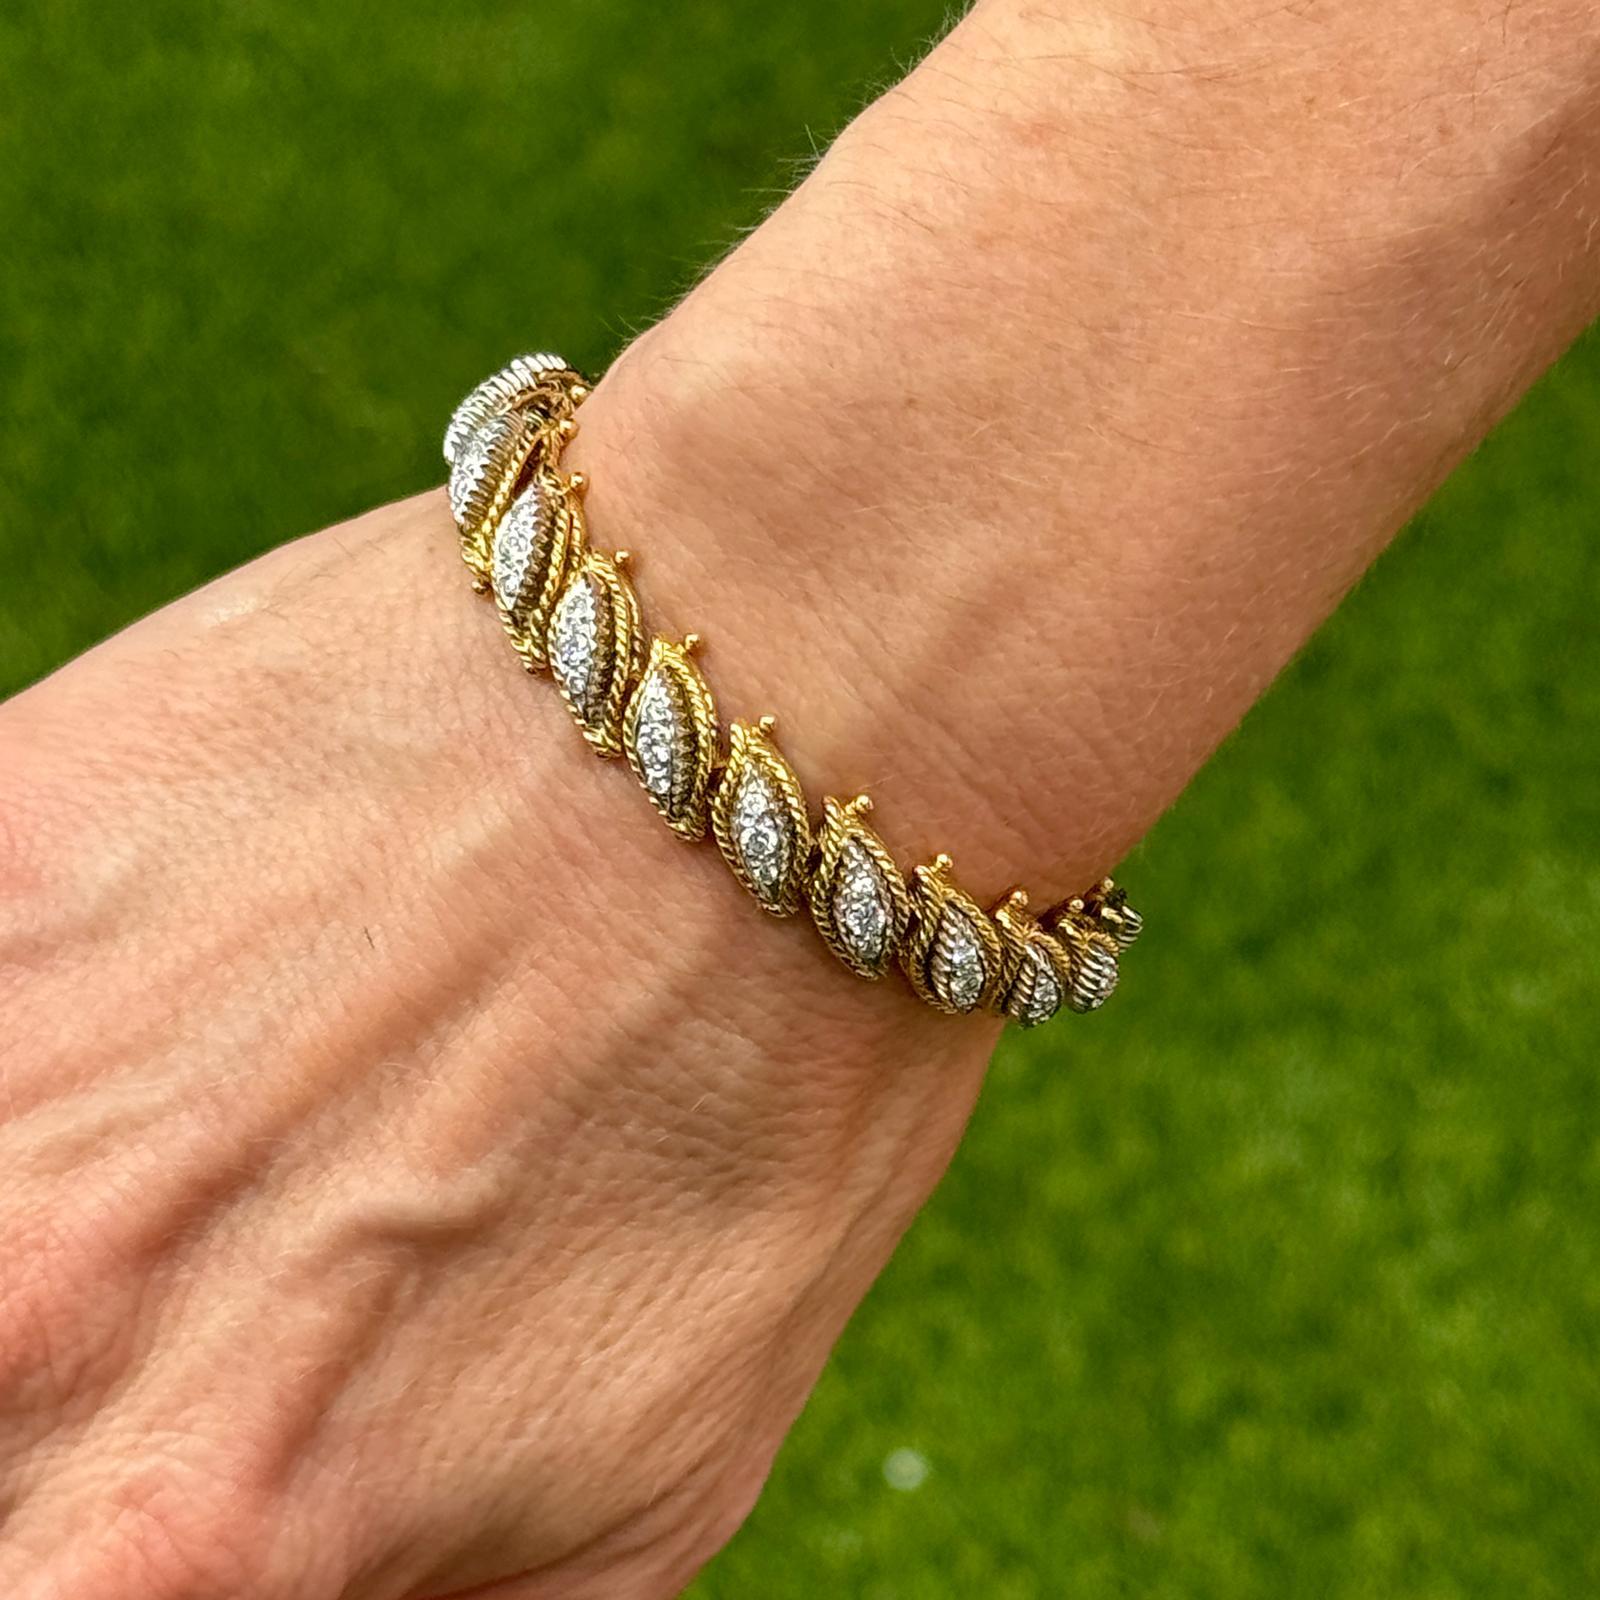 Wunderschönes Diamantarmband im Vintage-Stil, handgefertigt in 18 Karat Gelb- und Weißgold. Das Armband enthält 57 runde Diamanten im Brillantschliff mit einem Gesamtgewicht von etwa 1,71 Karat. Die Diamanten sind von der Farbe G-H und der Reinheit